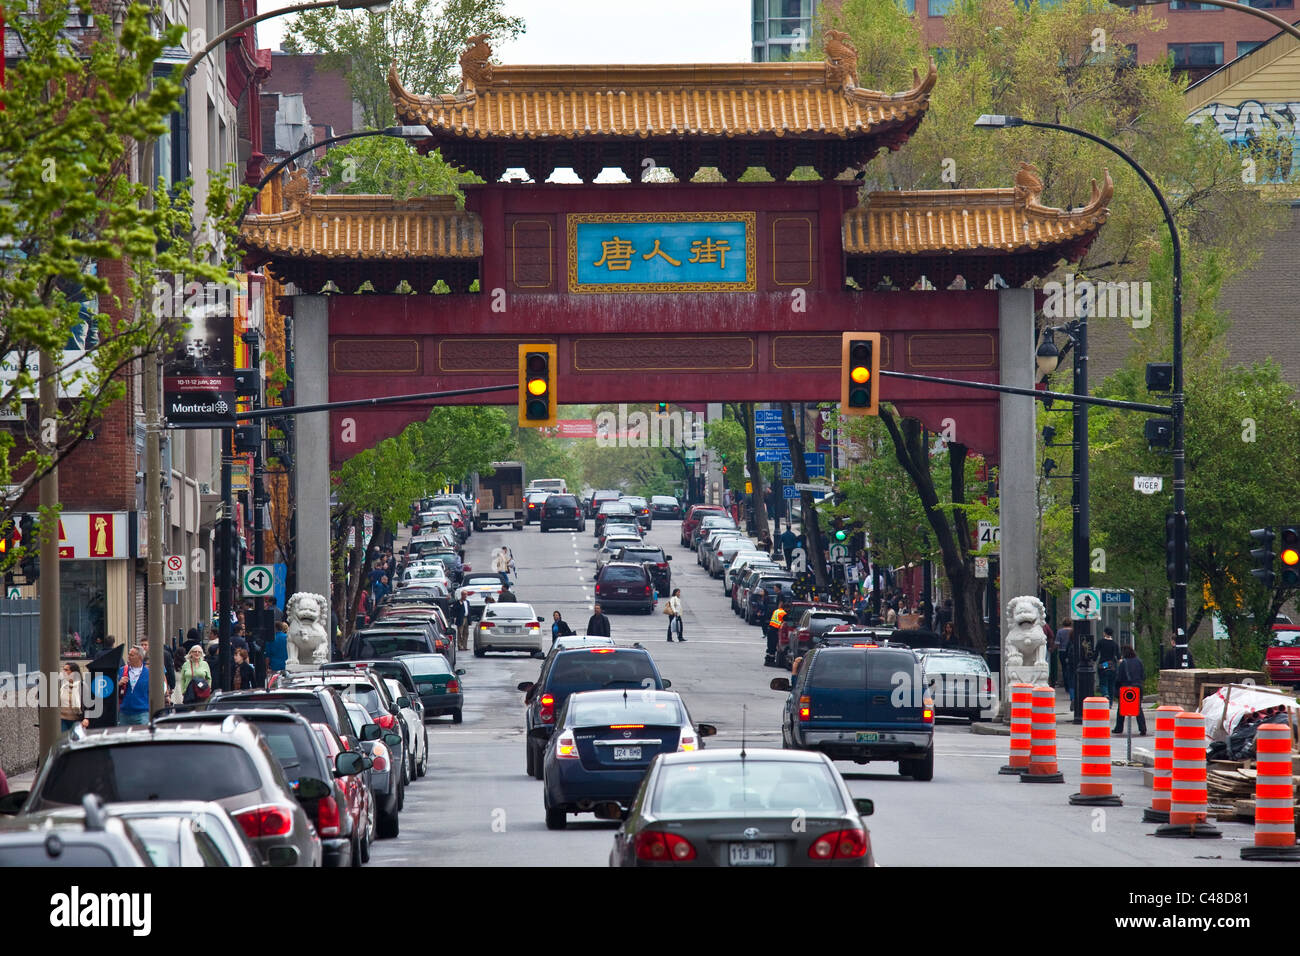 Chinese gate dans le quartier chinois, Montréal, Canada Banque D'Images